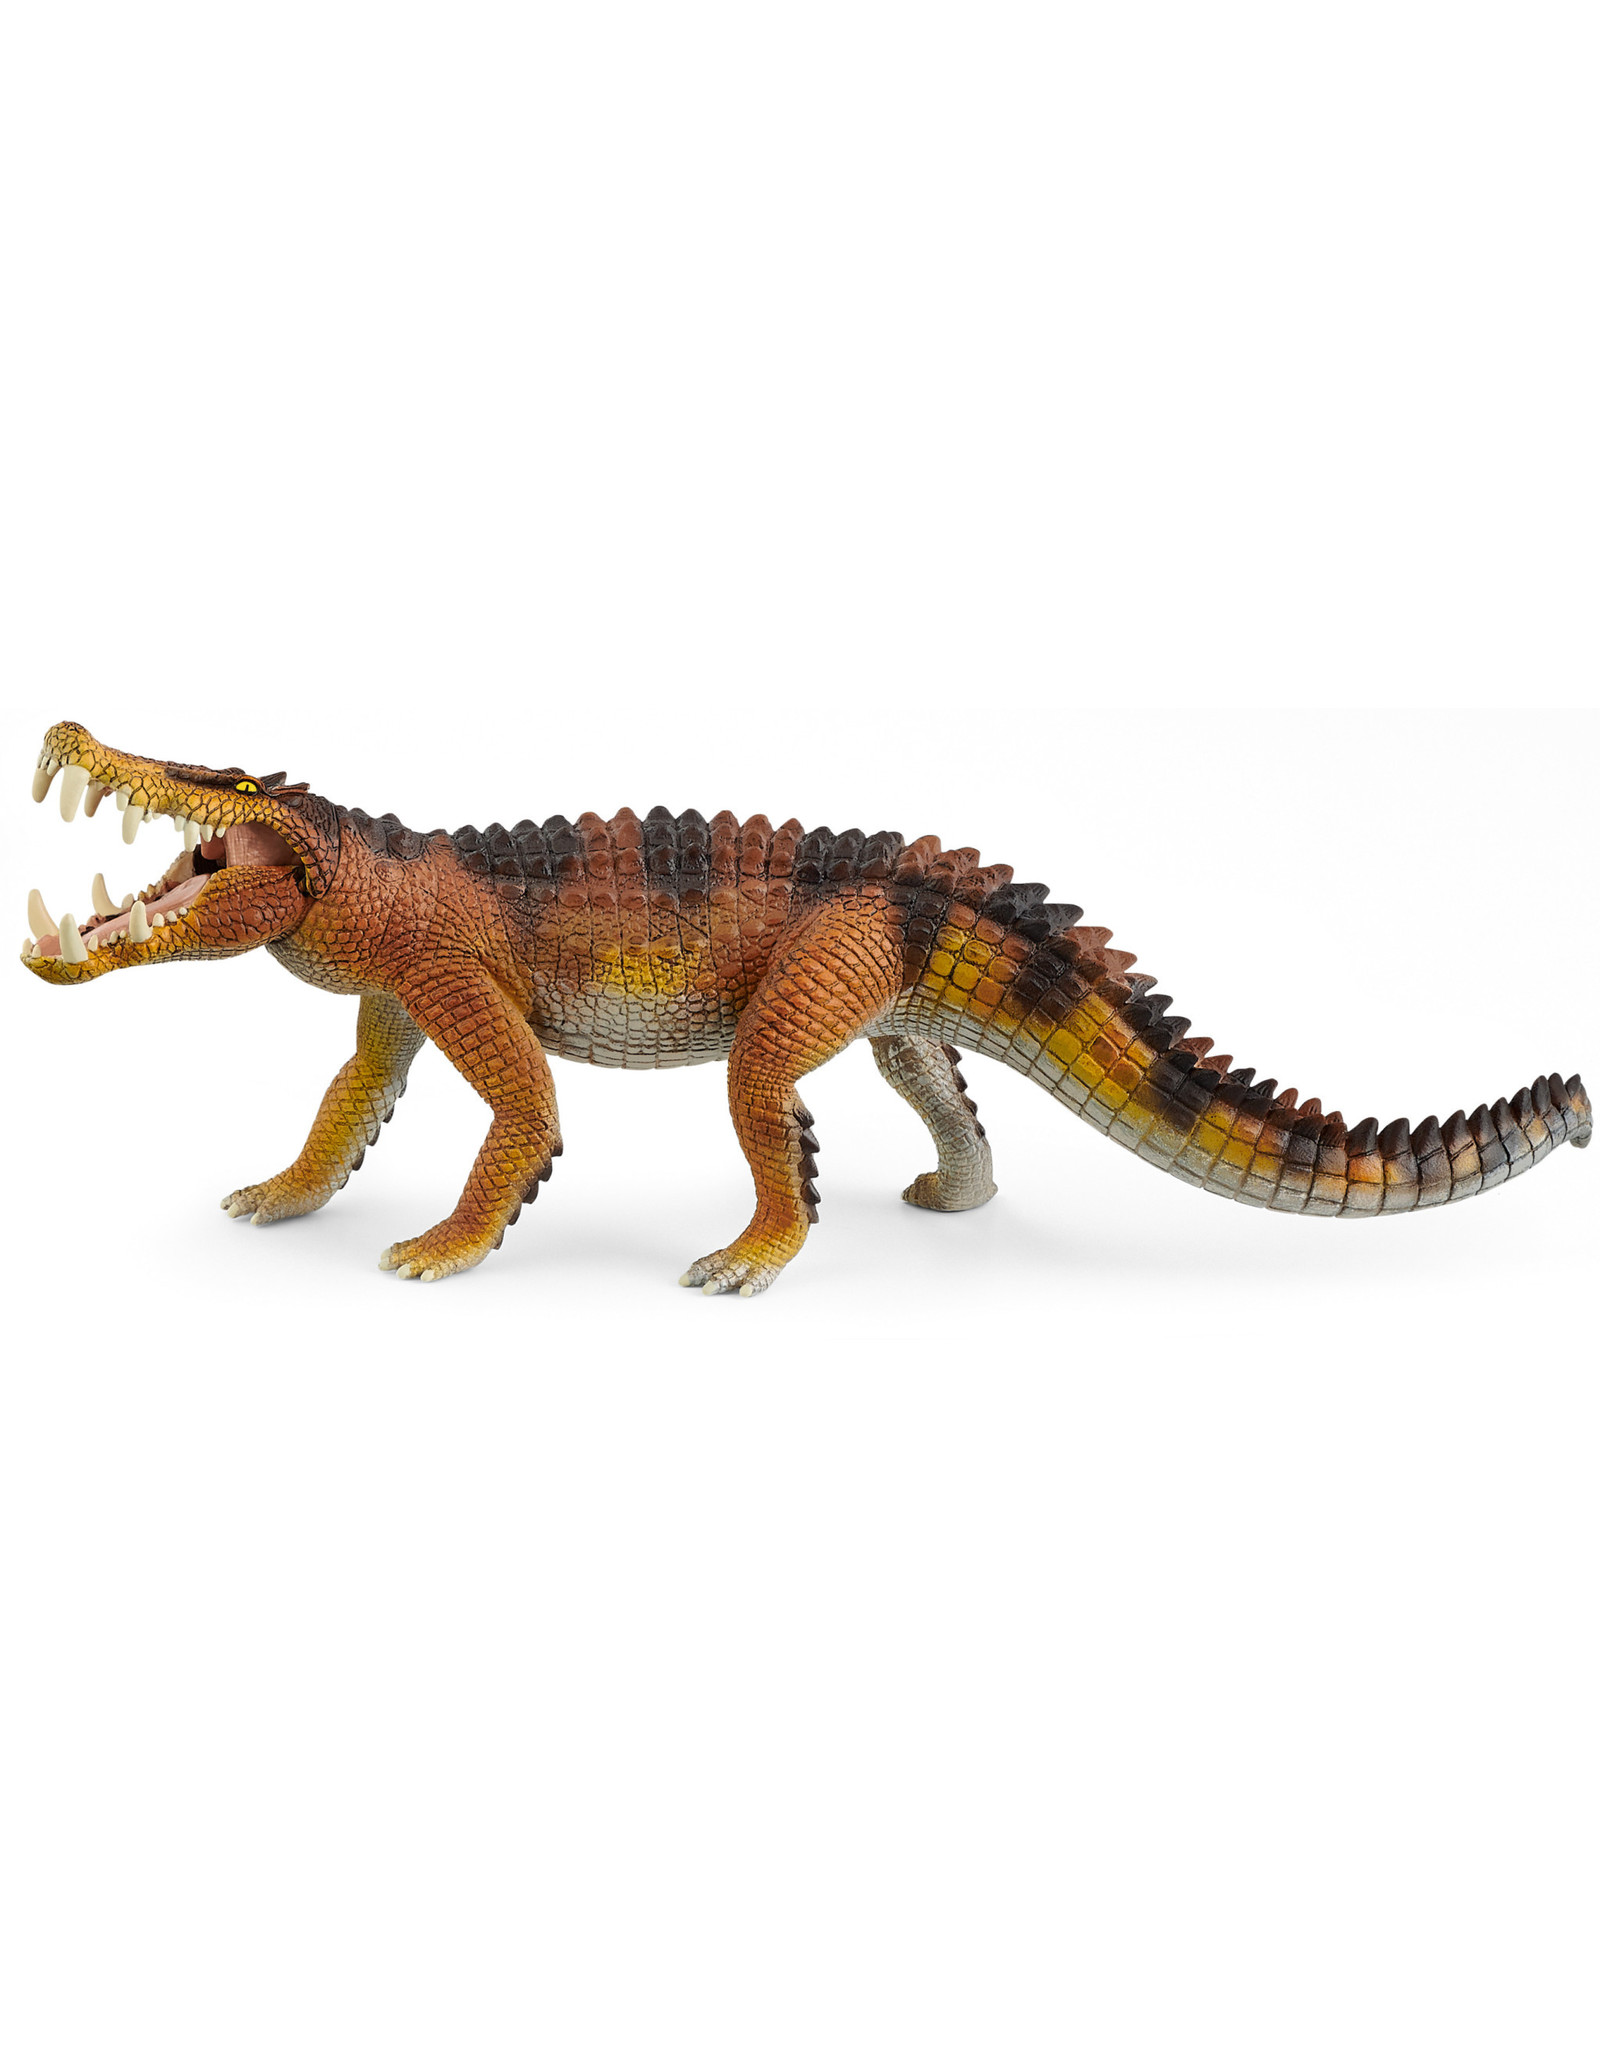 Schleich Schleich Dinosaurs 15025 Kaprosuchus